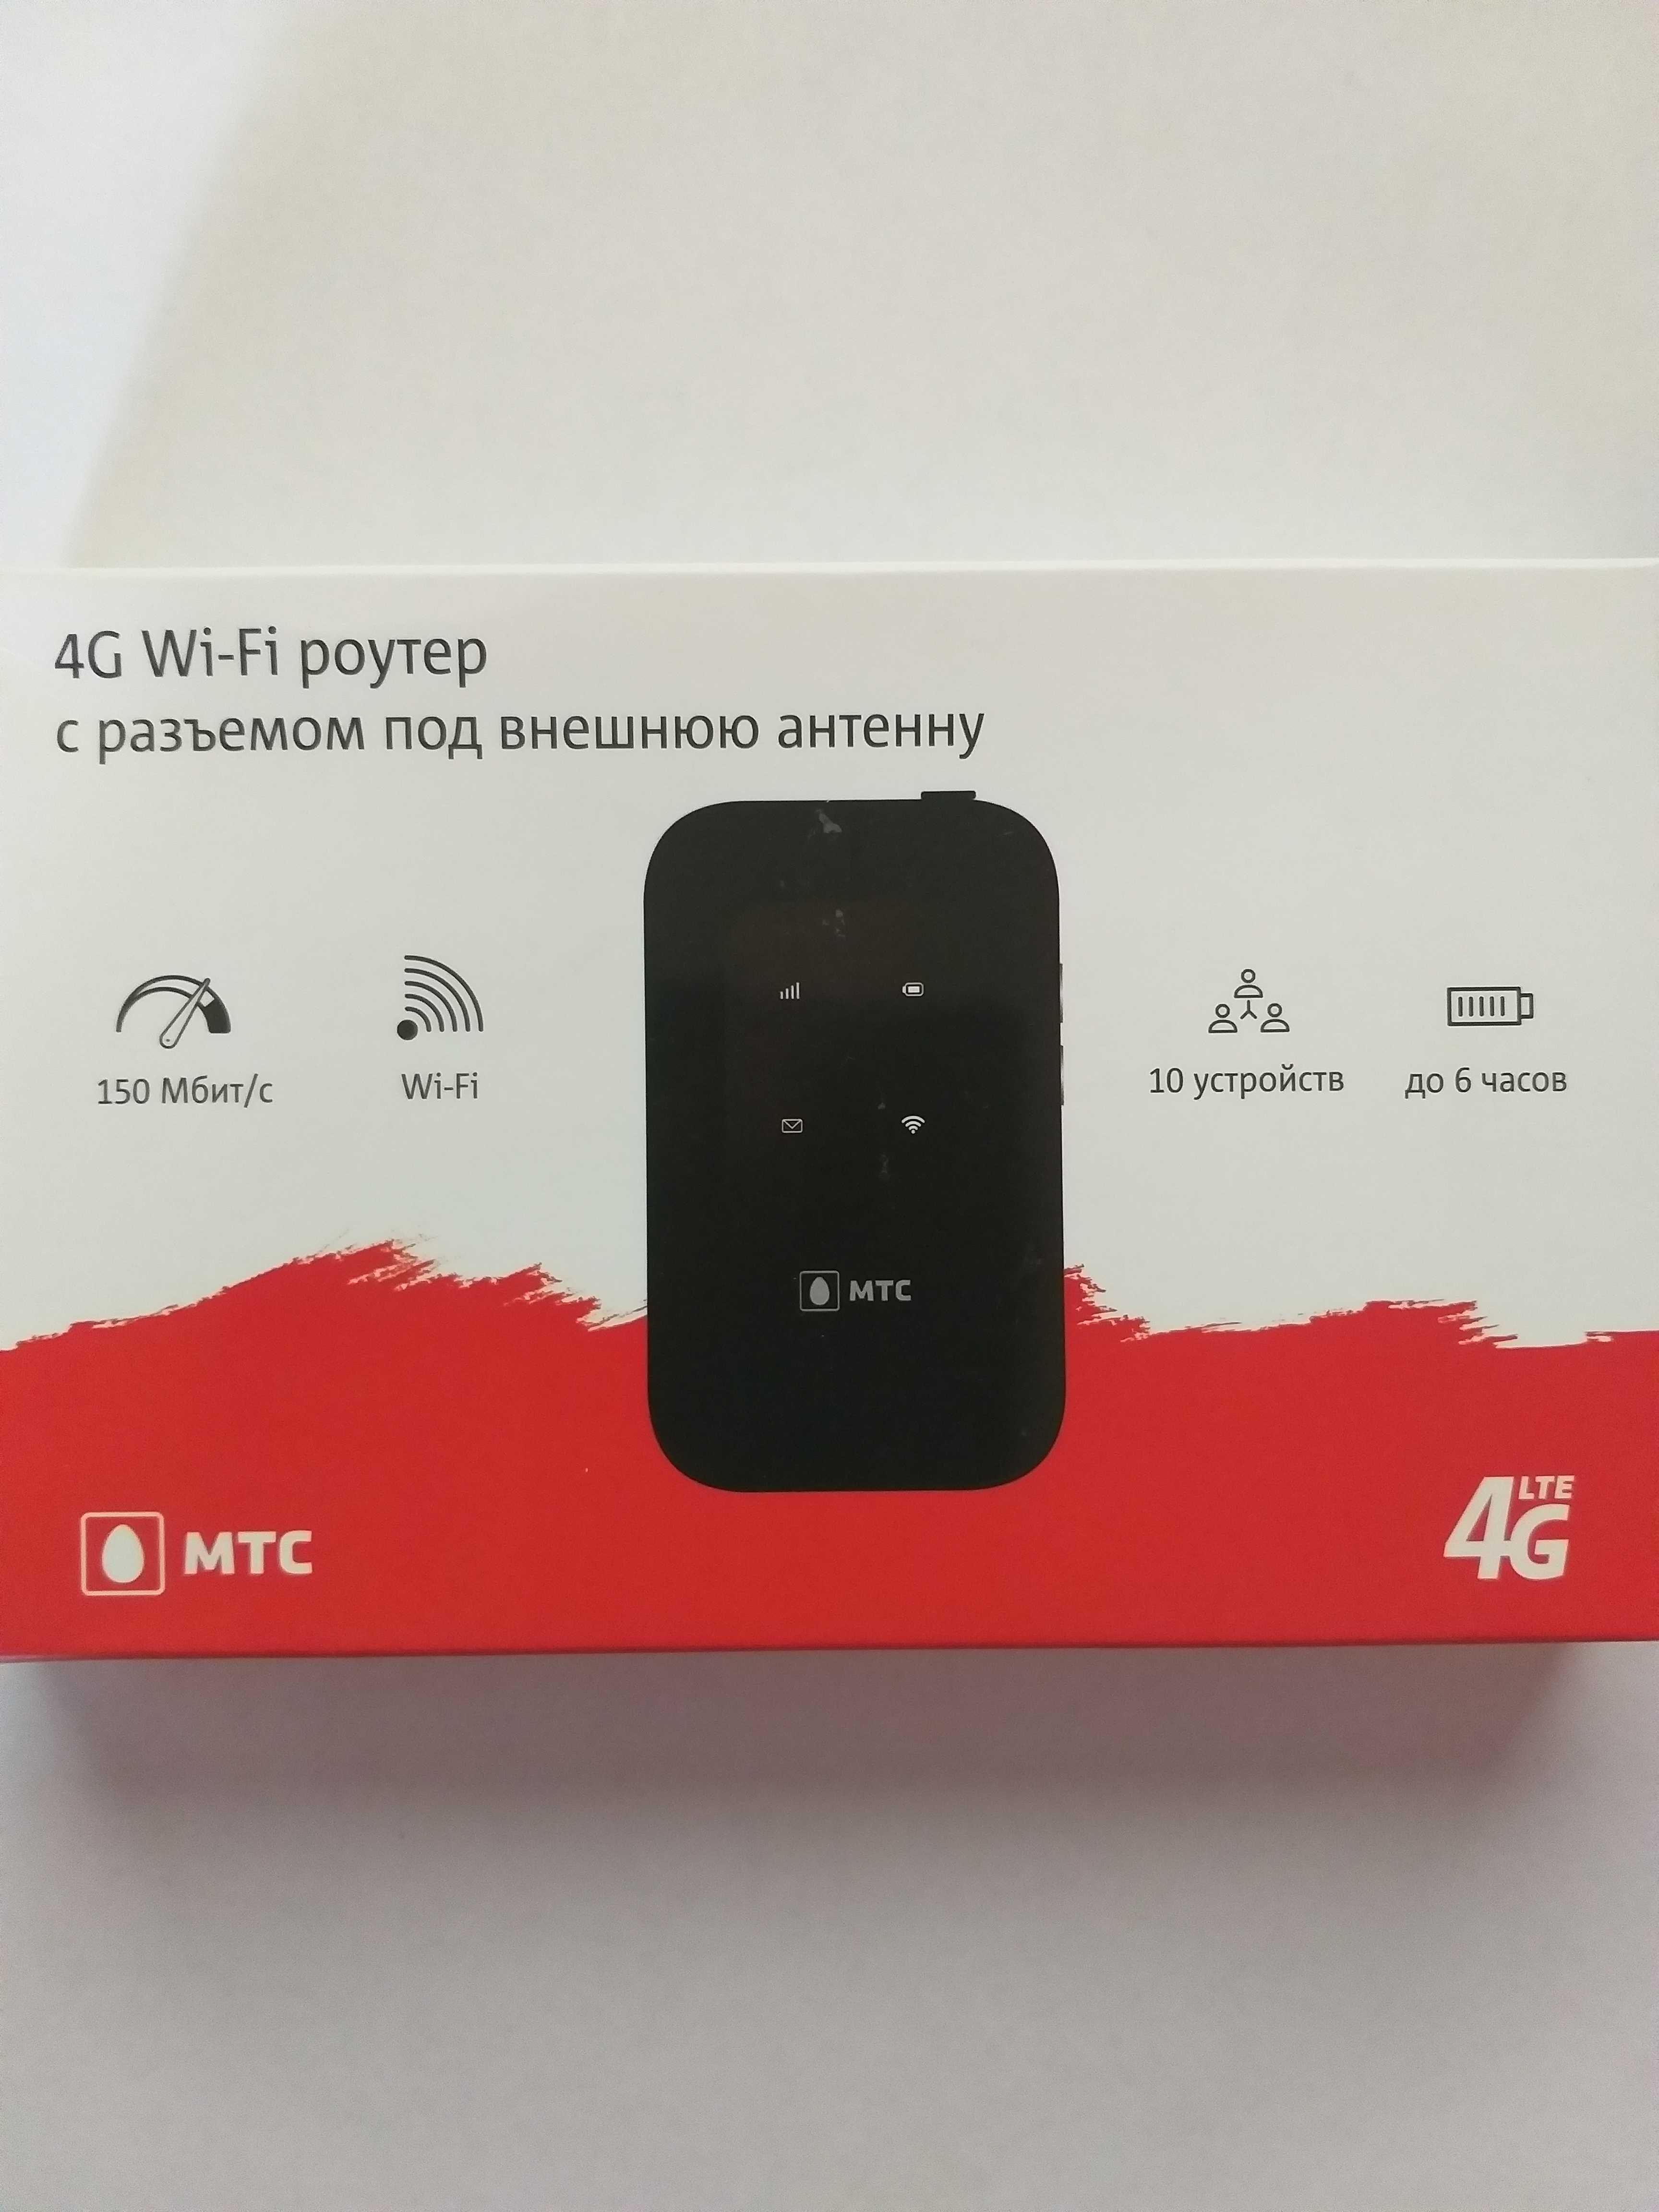 4G мобильный wi-fi роутер МТС 8723FT (ZTE MF960)  с антенным выходом